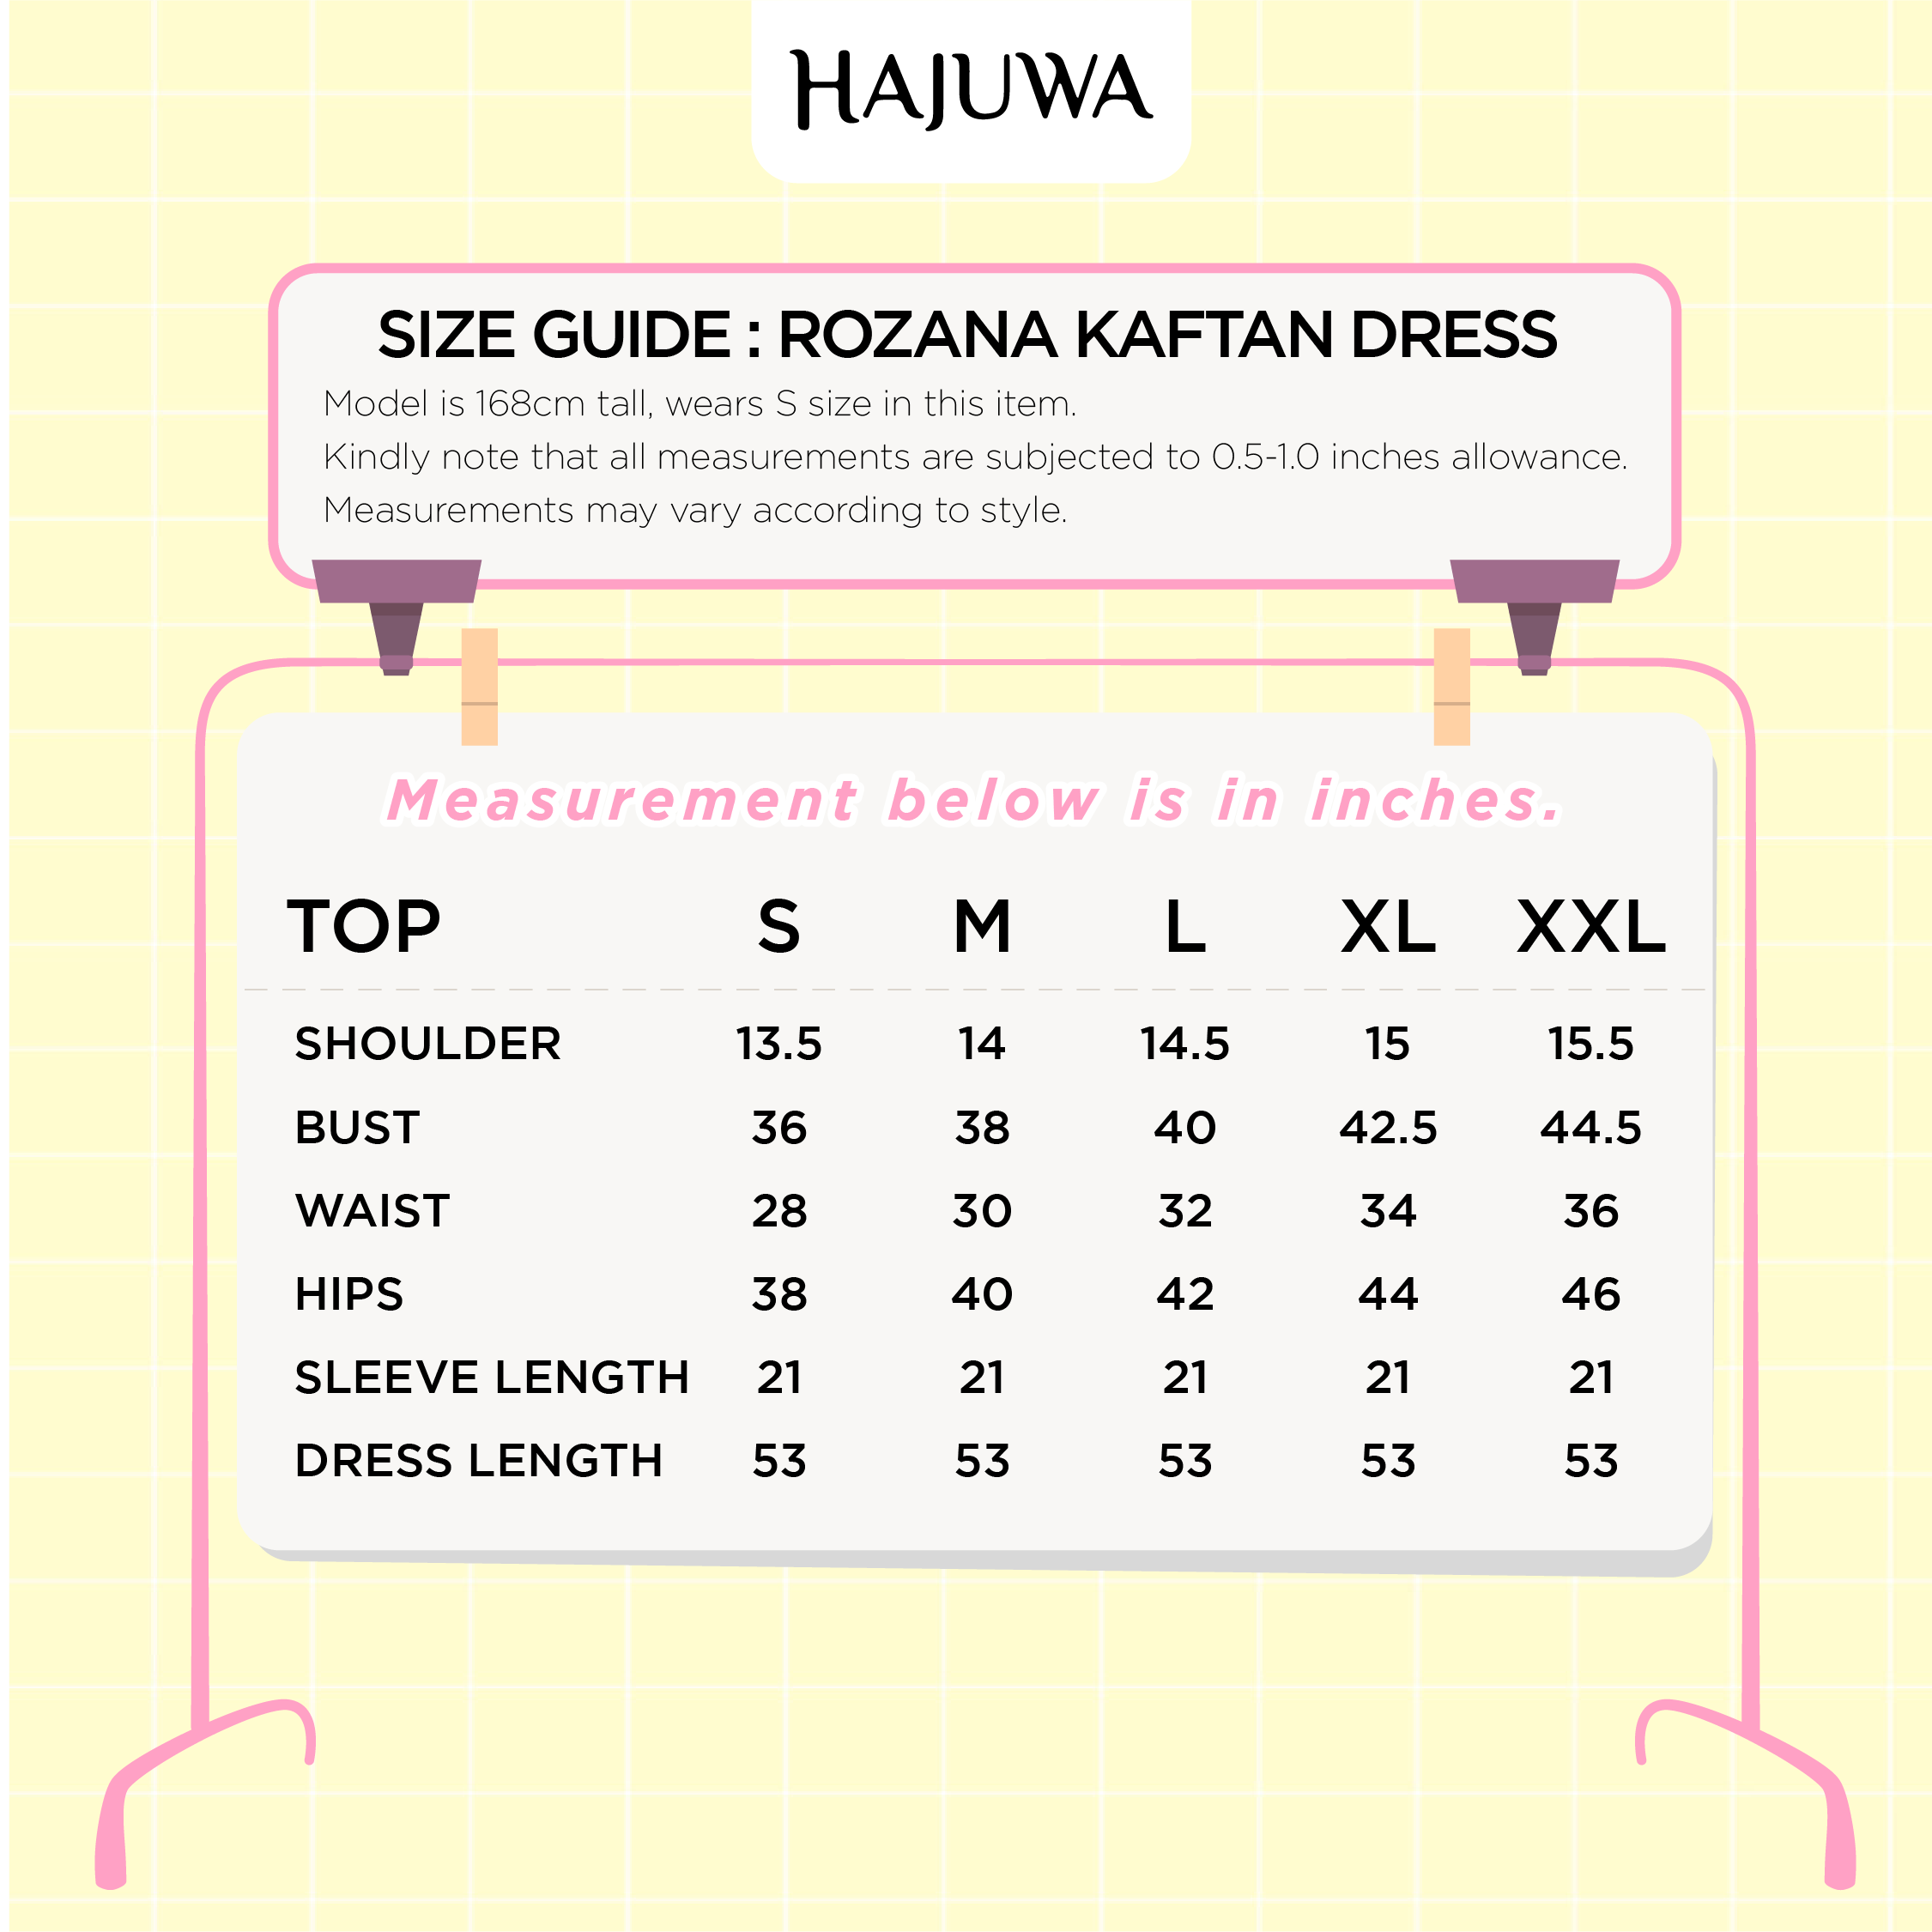 Rozana kaftan size measurement from S to XXL